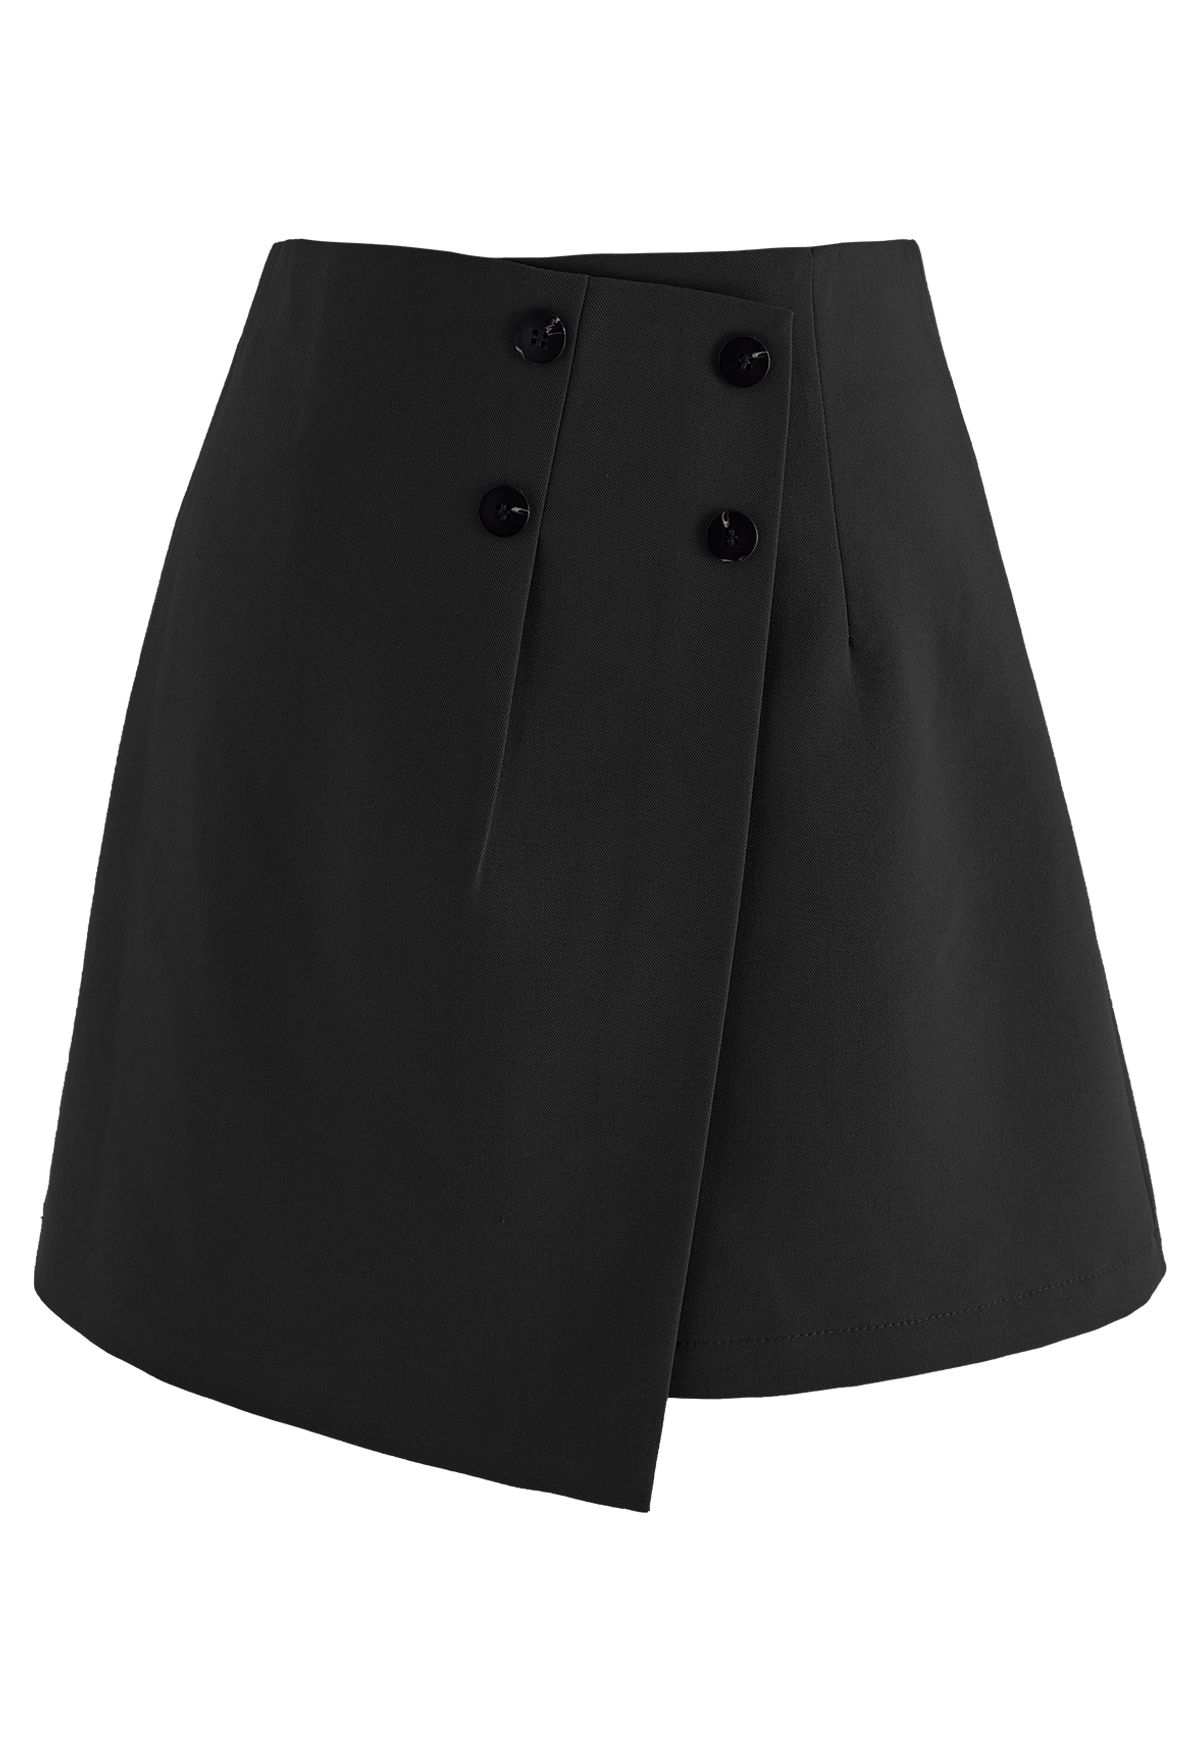 Minifalda Bud con solapa delantera abotonada en negro